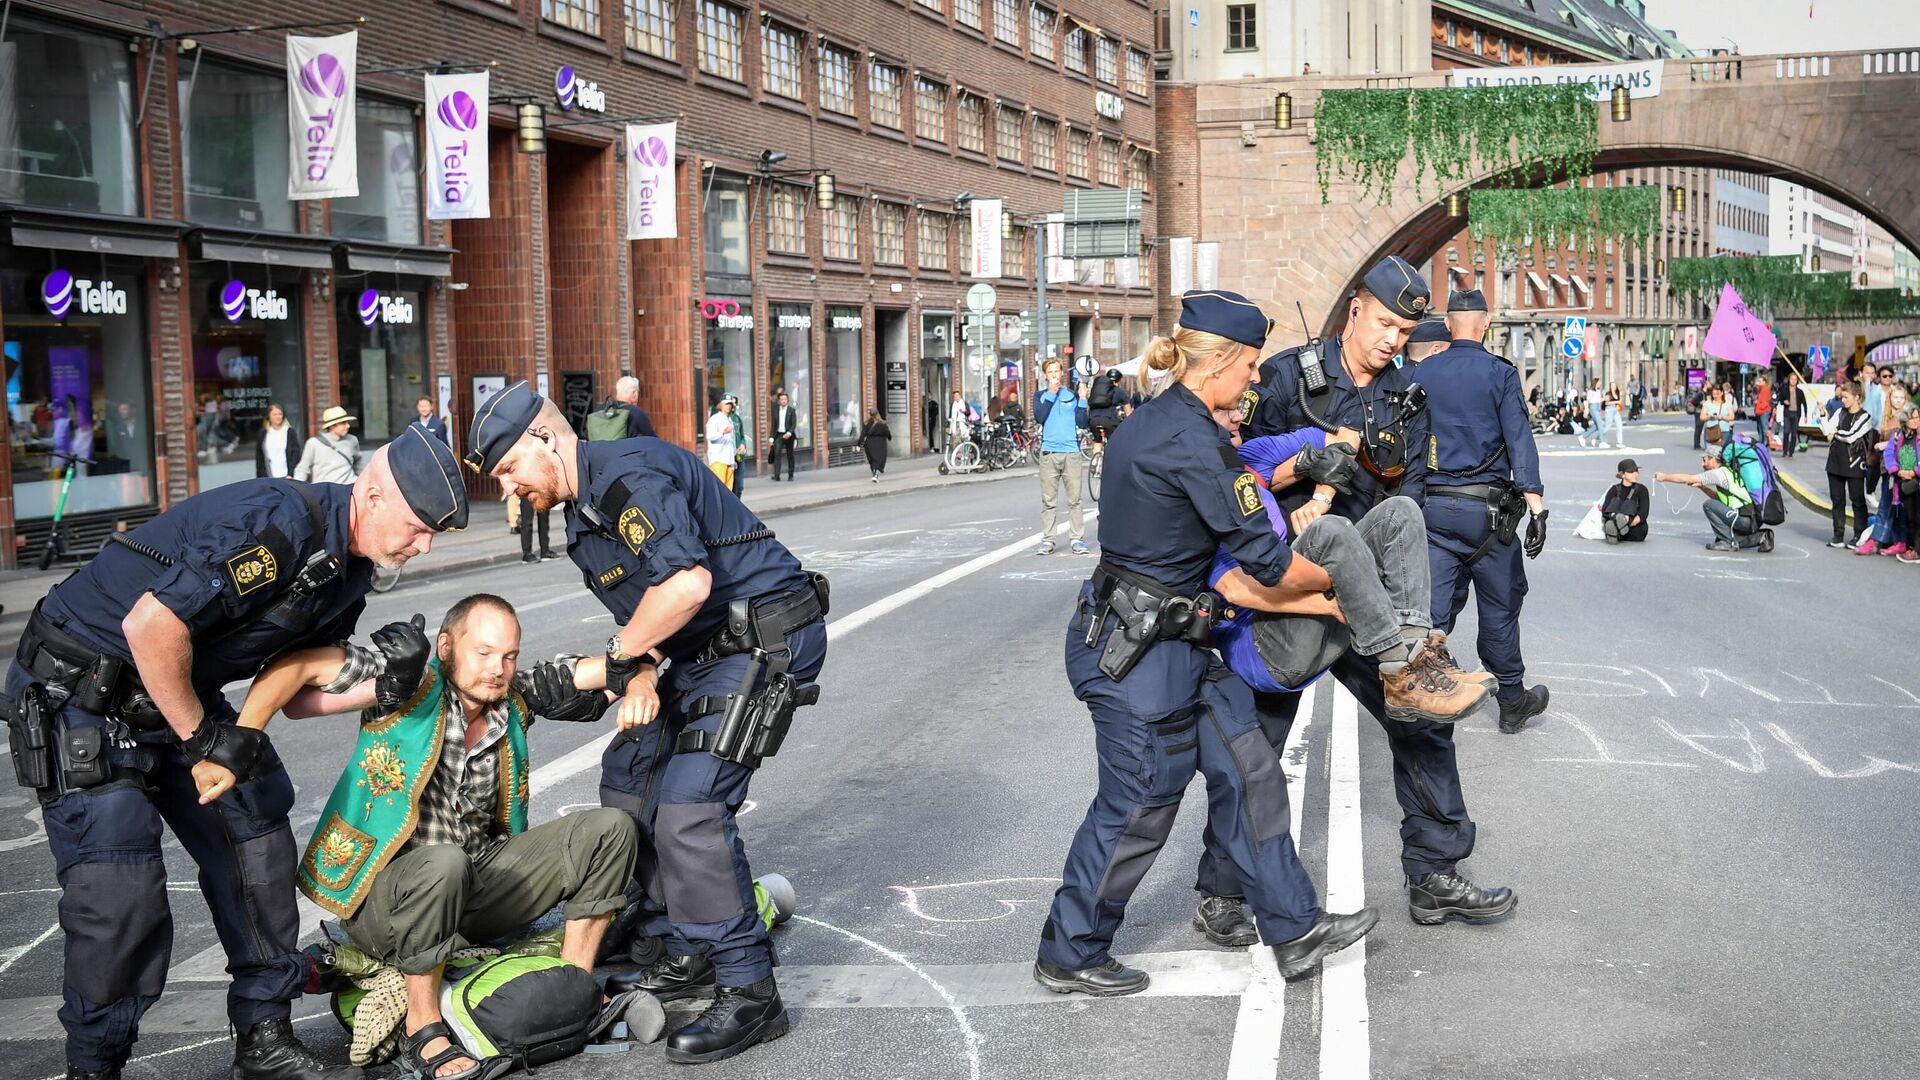 
Poliția reține participanții la un protest ecologic în Stockholm, Suedia - Sputnik Moldova, 1920, 18.10.2021